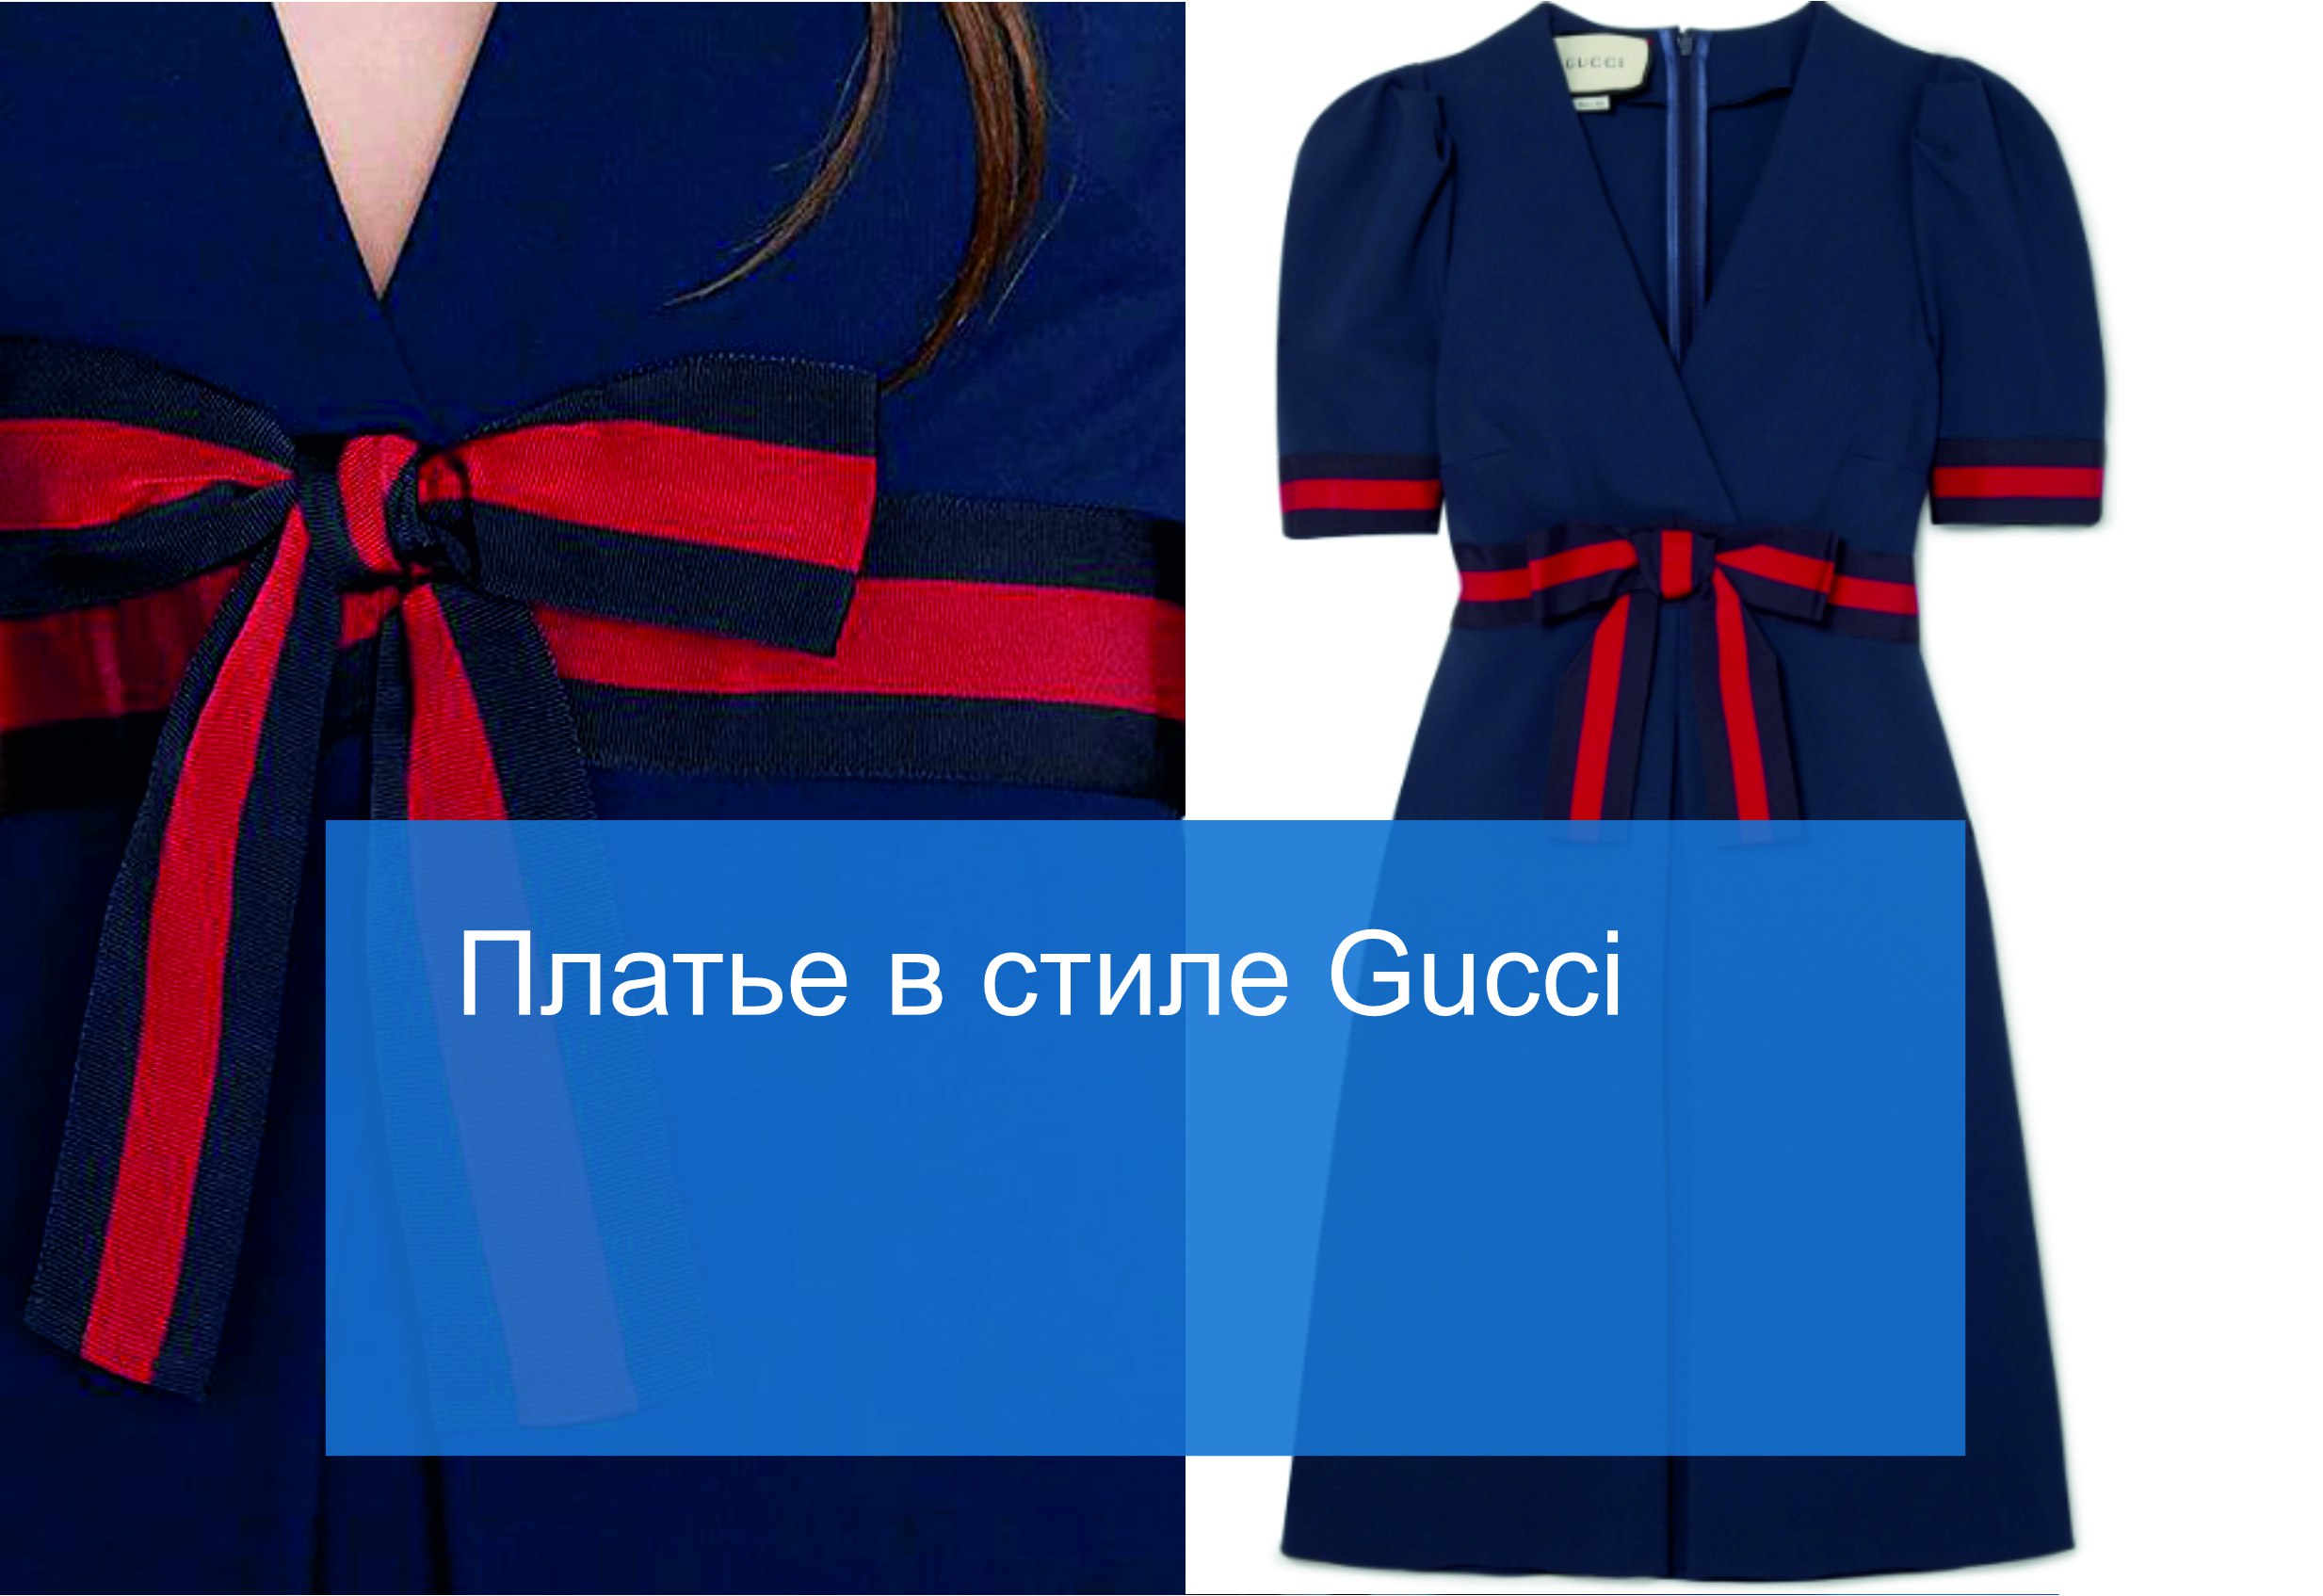 Платье в стиле Gucci: дизайн с использованием репсовых лент - Кантекс